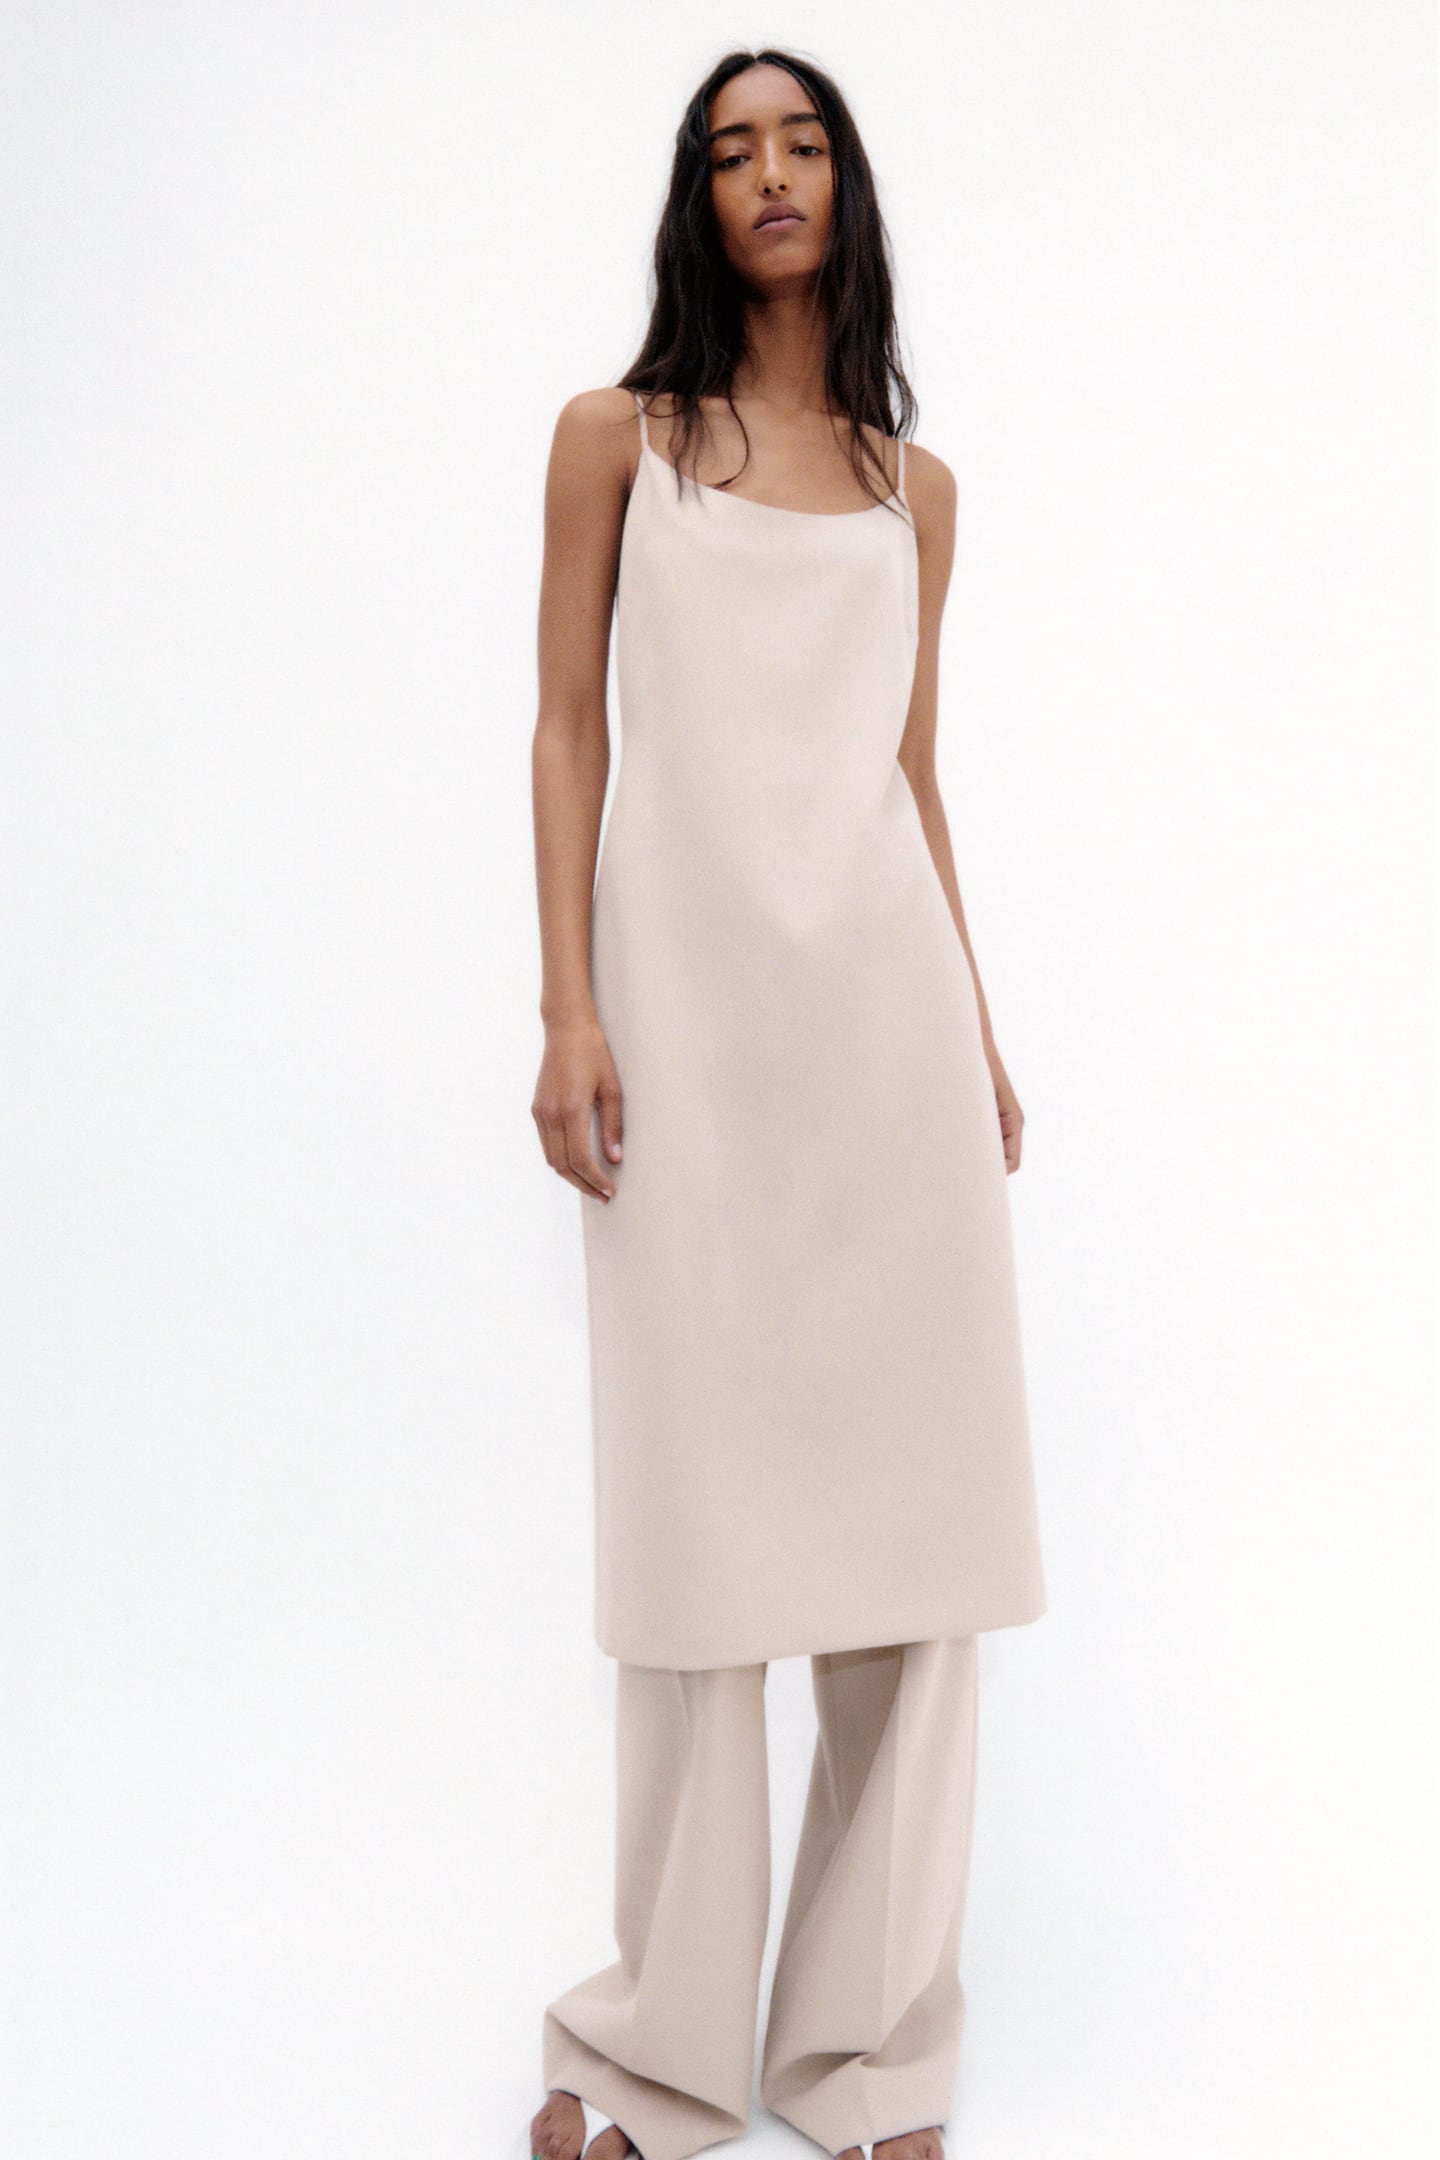 Zara + Mittellanges Kleid – Limited Edition